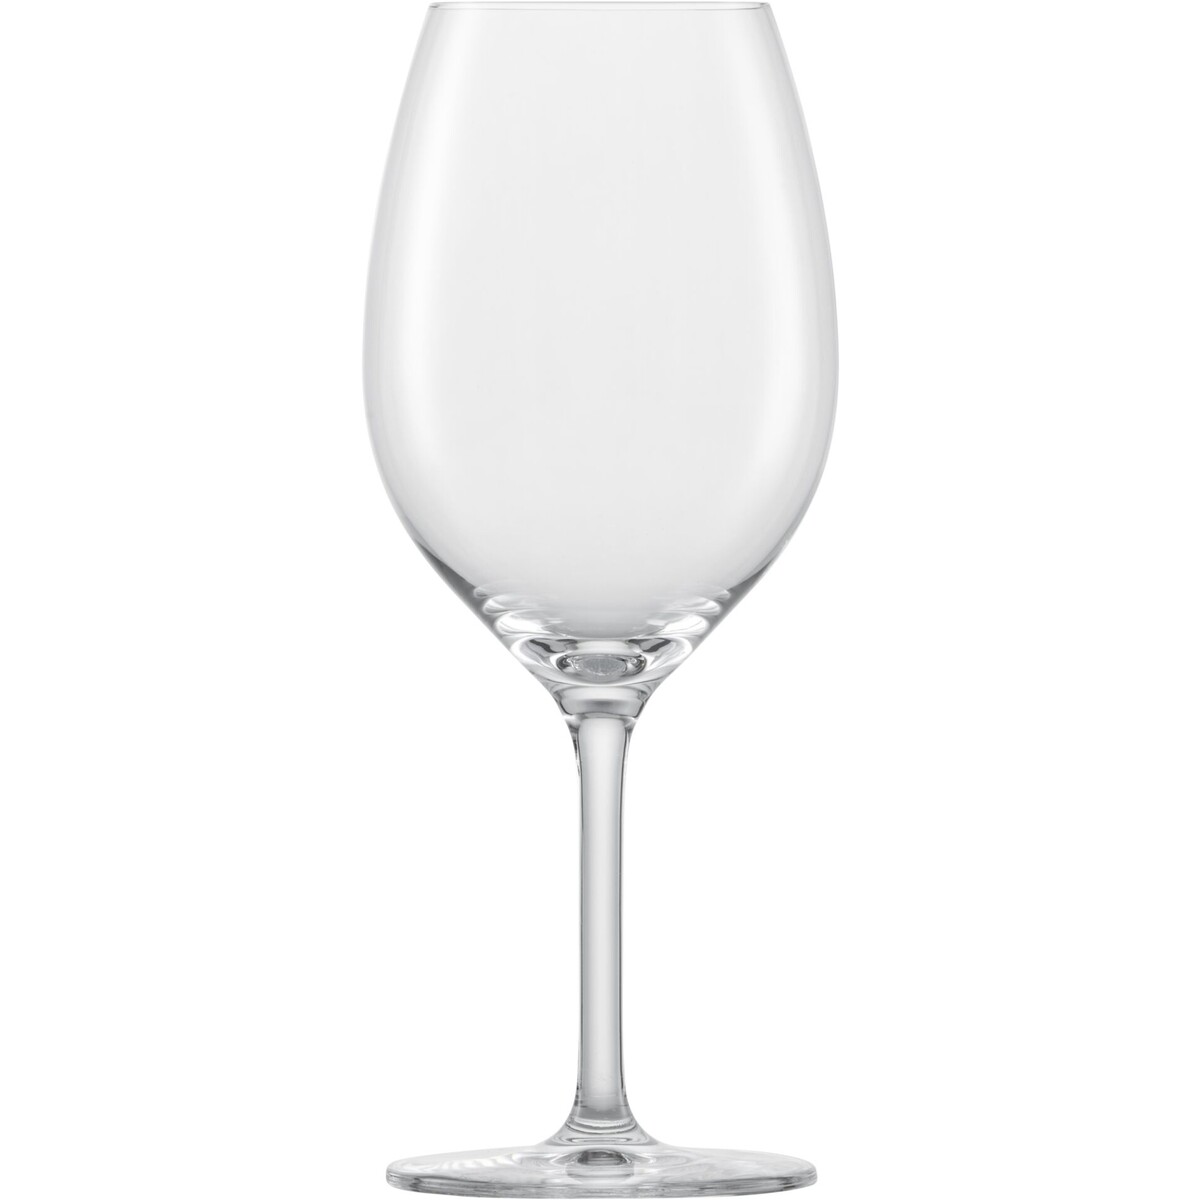 Glasserie "Banquet" Rotweinglas 475ml